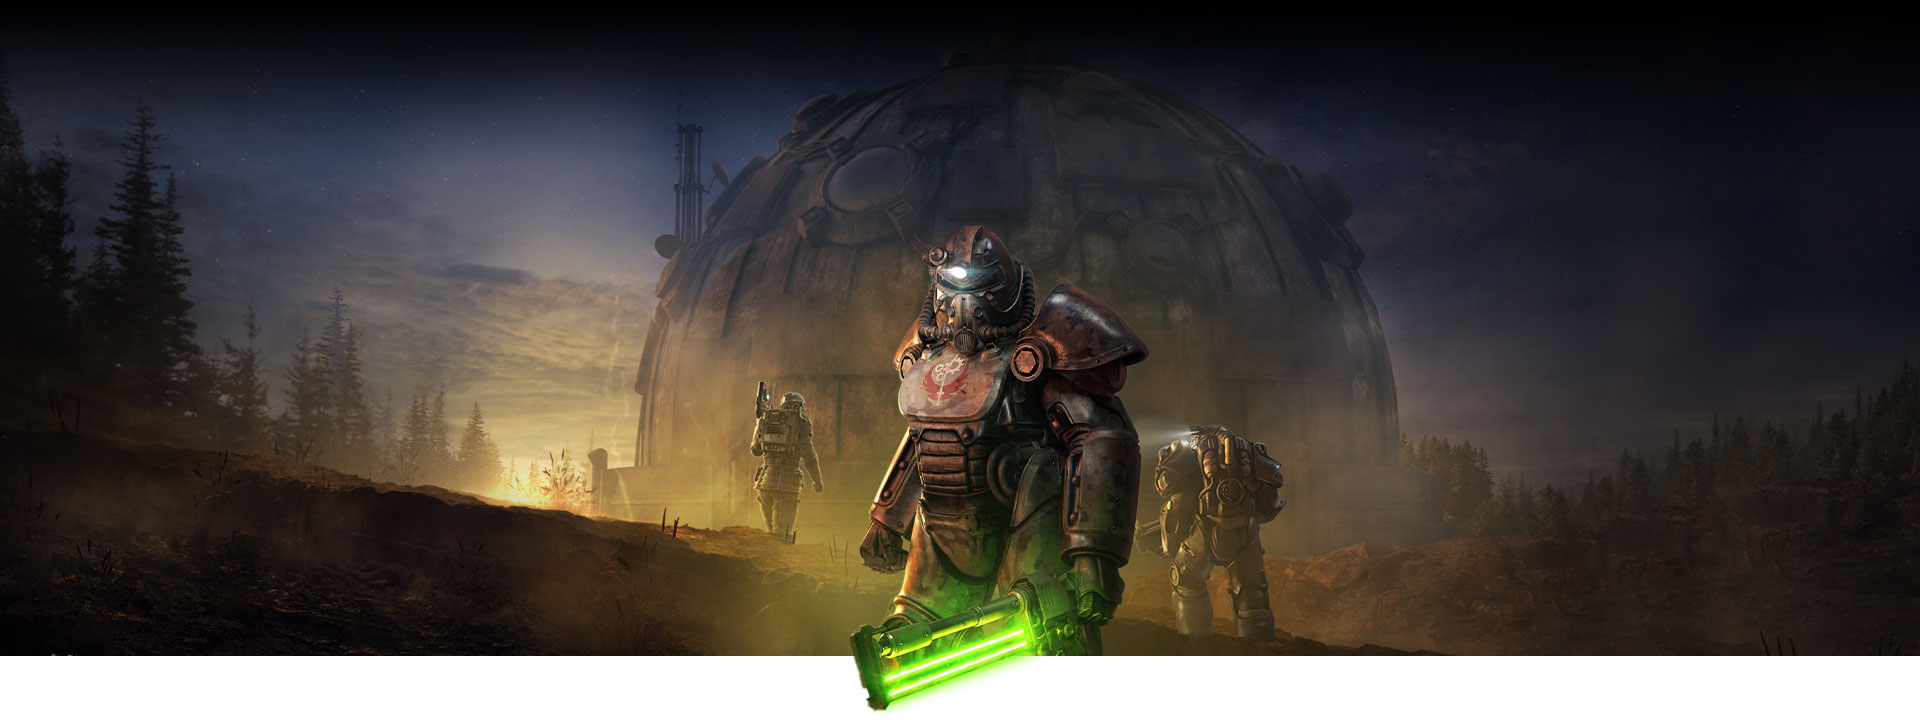 Персонаж в силовой броне держит светящееся холодное оружие, стоя перед большим зданием с куполом